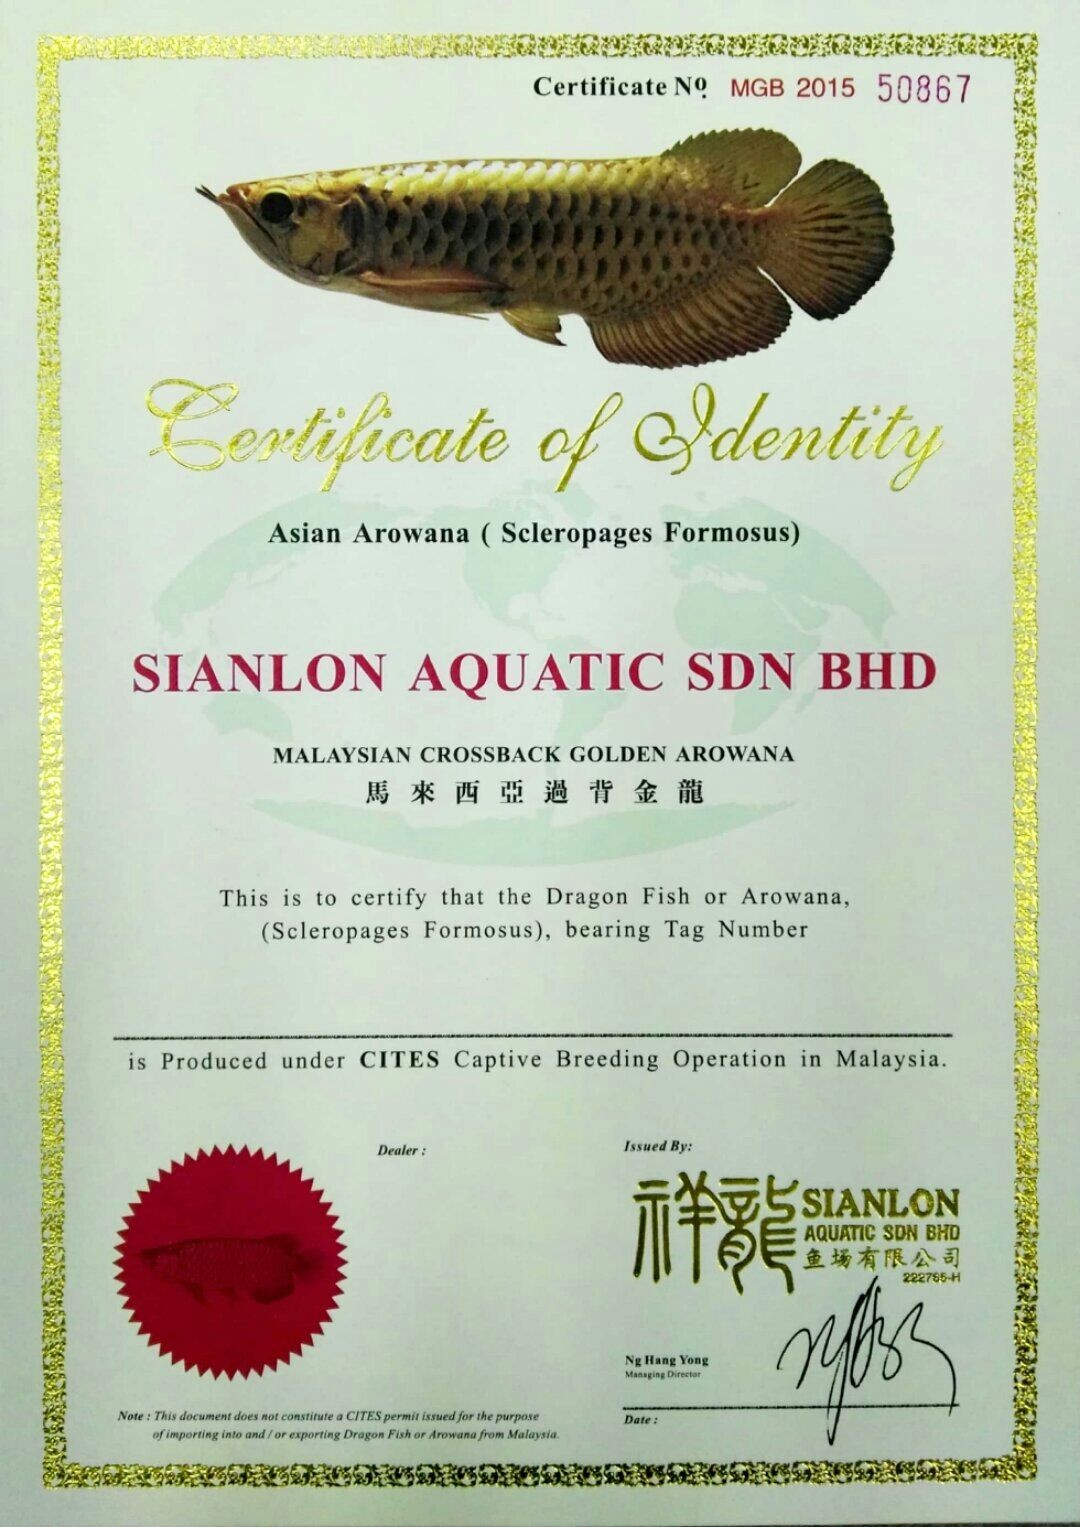 上海祥龙鱼场马来西亚过背金龙证书